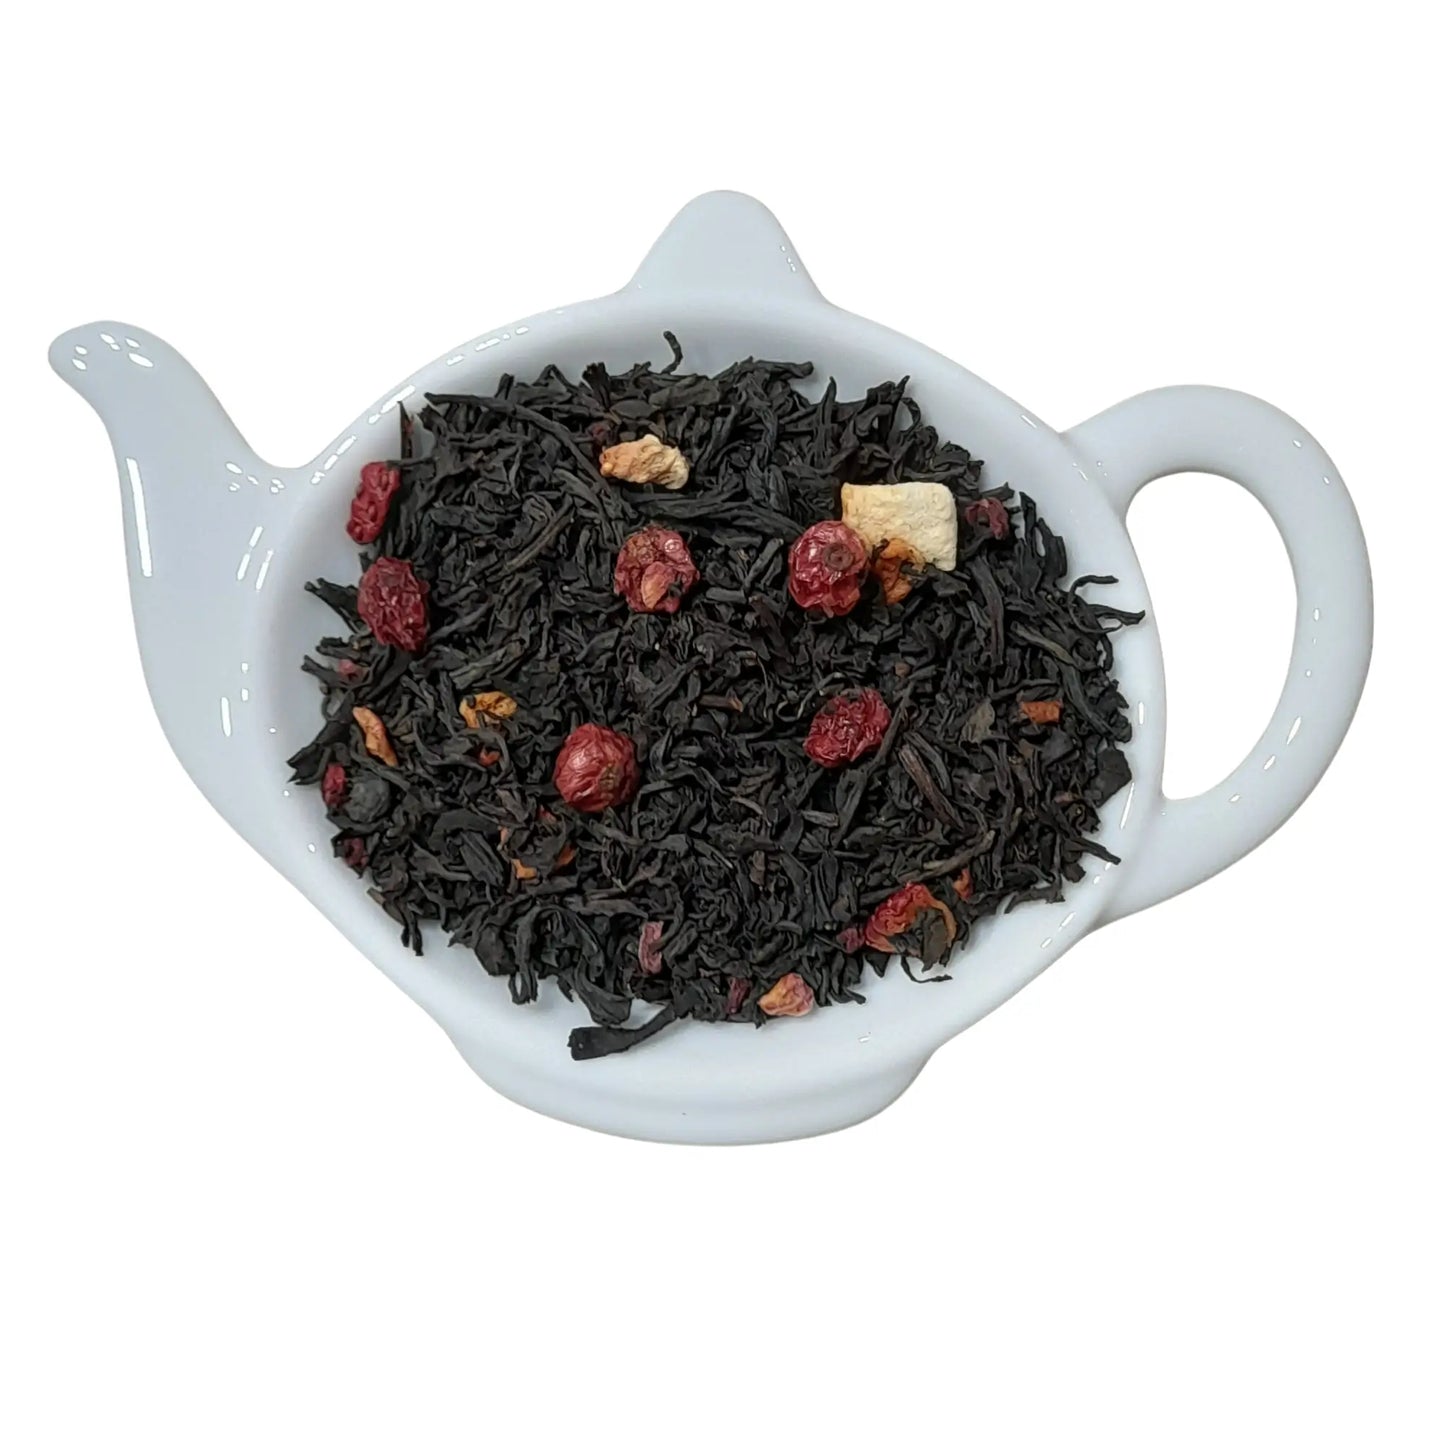 Zwarte thee met frisse bessen, zoals aalbessen en stukjes framboos.